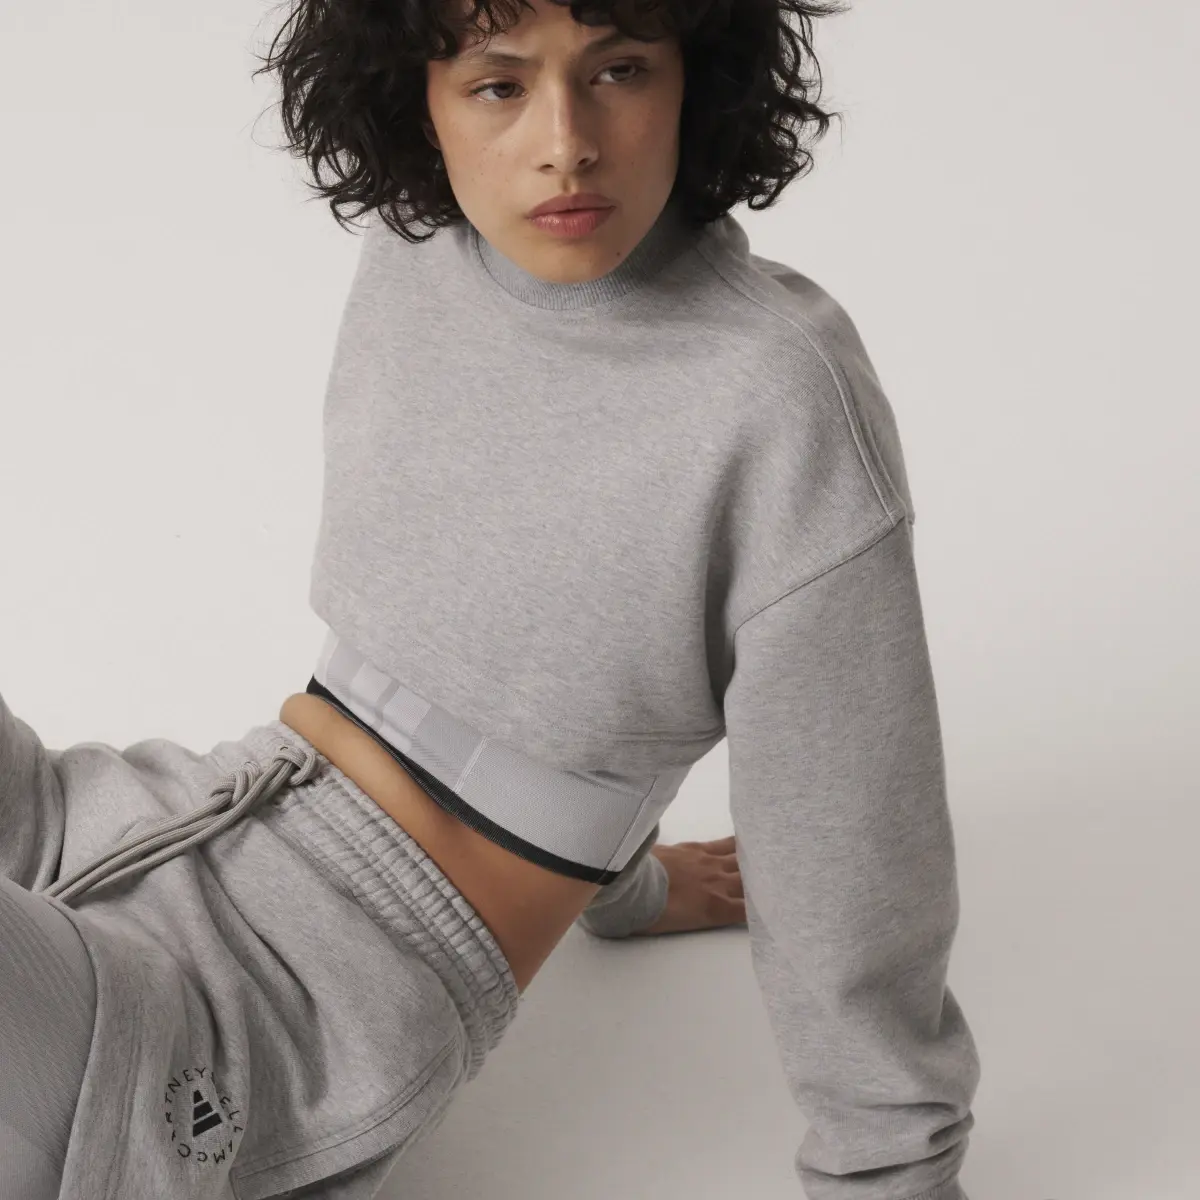 Adidas by Stella McCartney TrueCasuals Cropped Sportswear Sweatshirt. 2